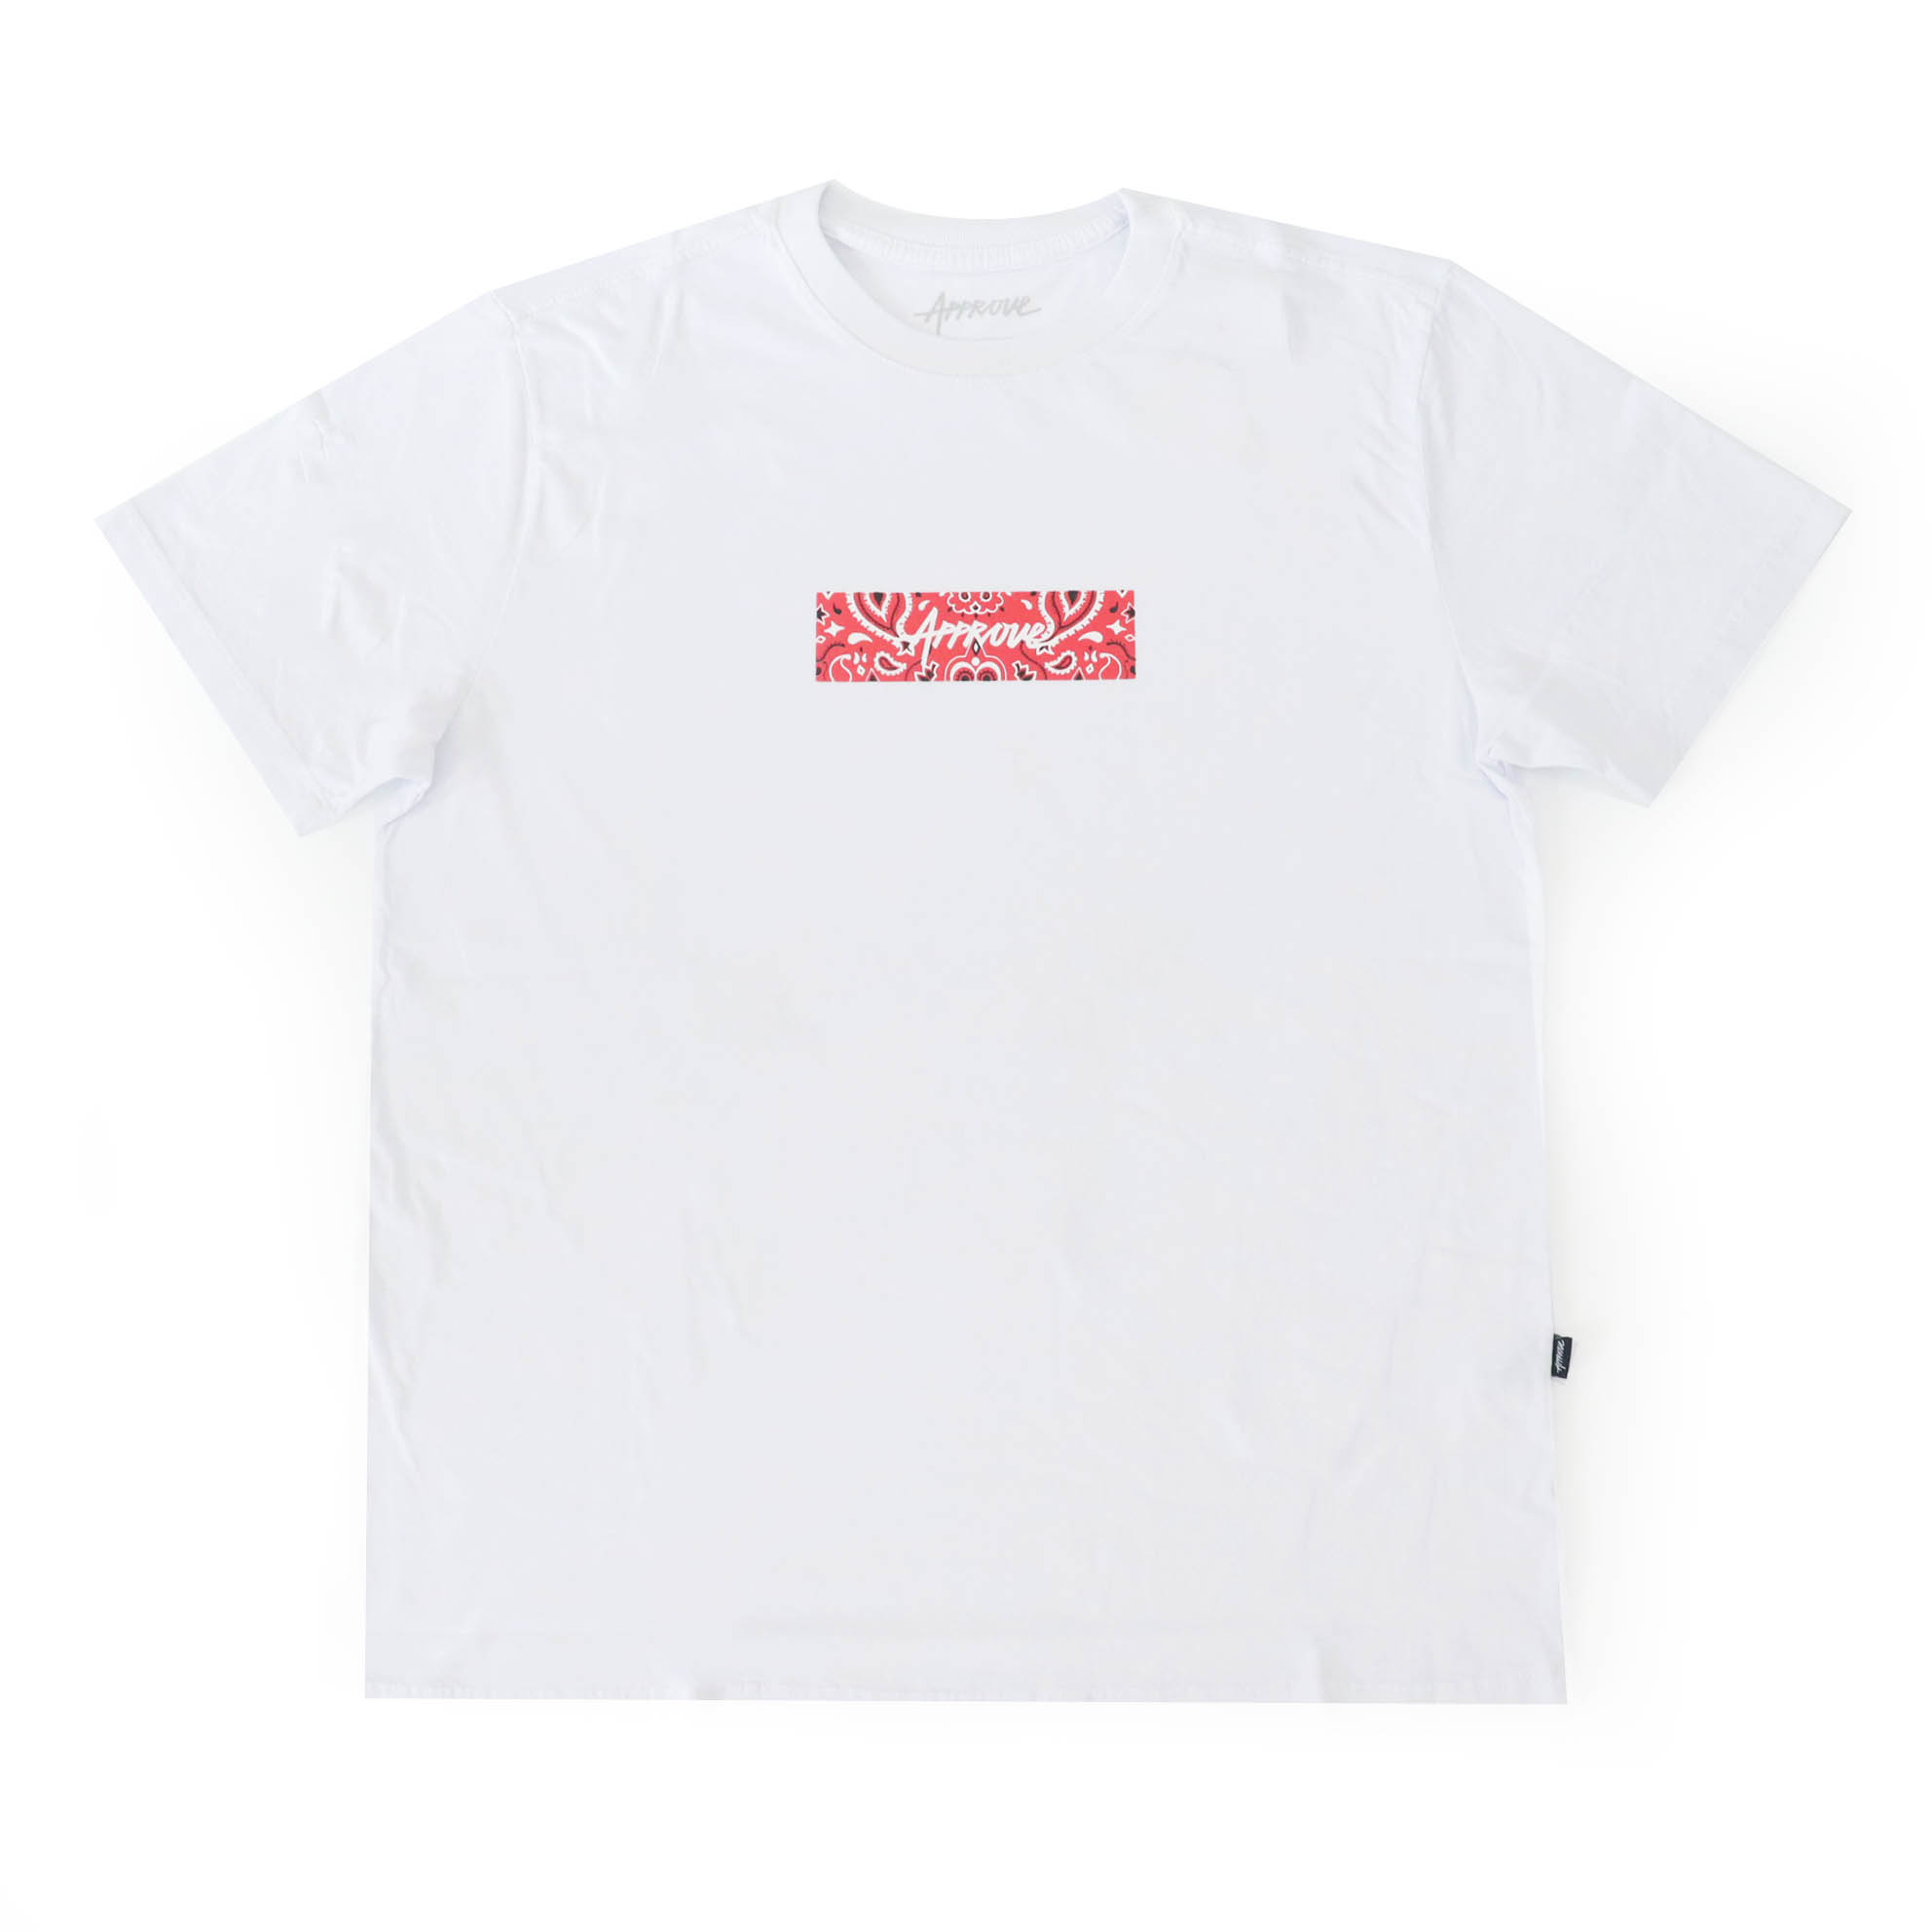 Camiseta Approve Bold Cashmere - Branco/Vermelho